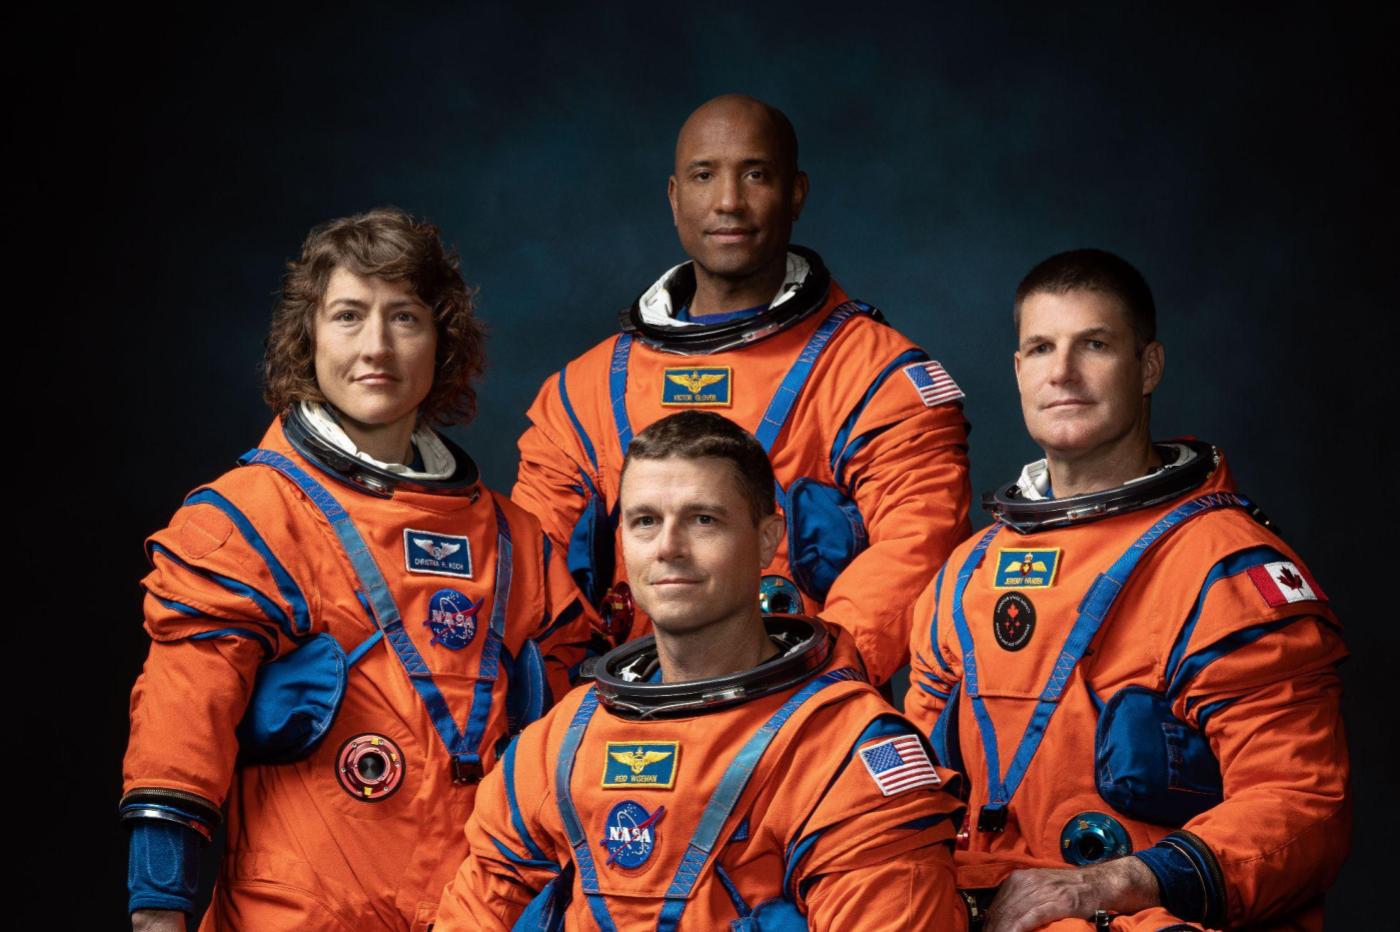 Les astronautes de la mission Artemis II